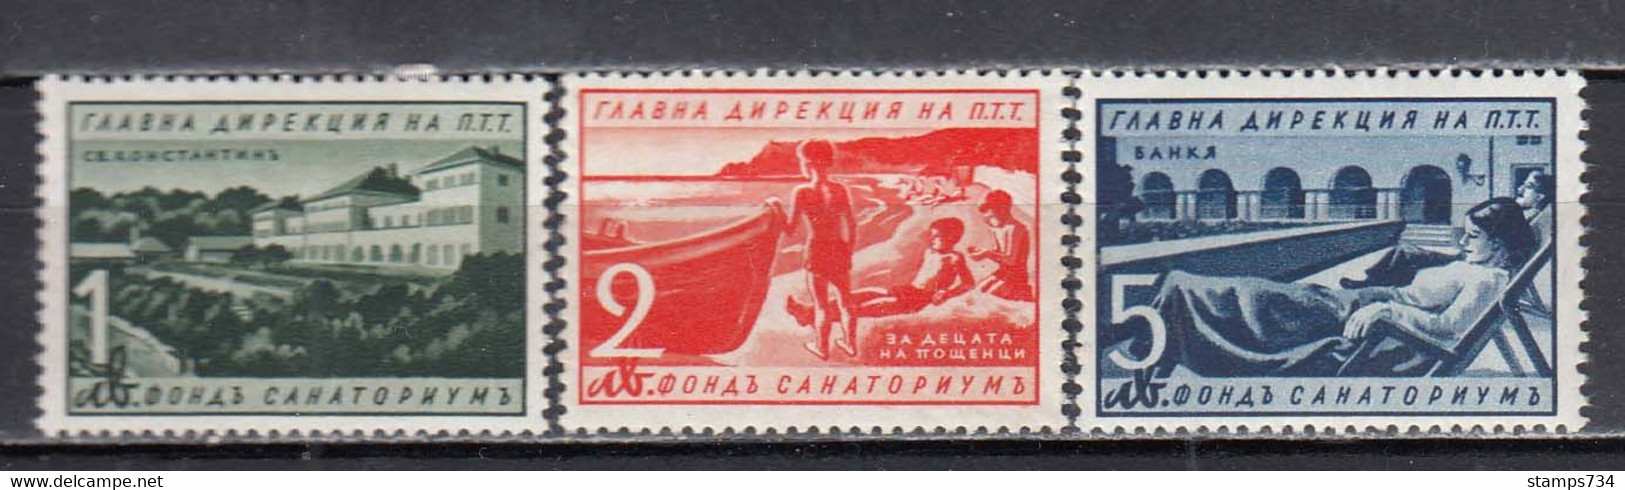 Bulgaria 1941 - Zwangzuschlagsmarken Mi-nr. 16/18, MNH** - Express Stamps